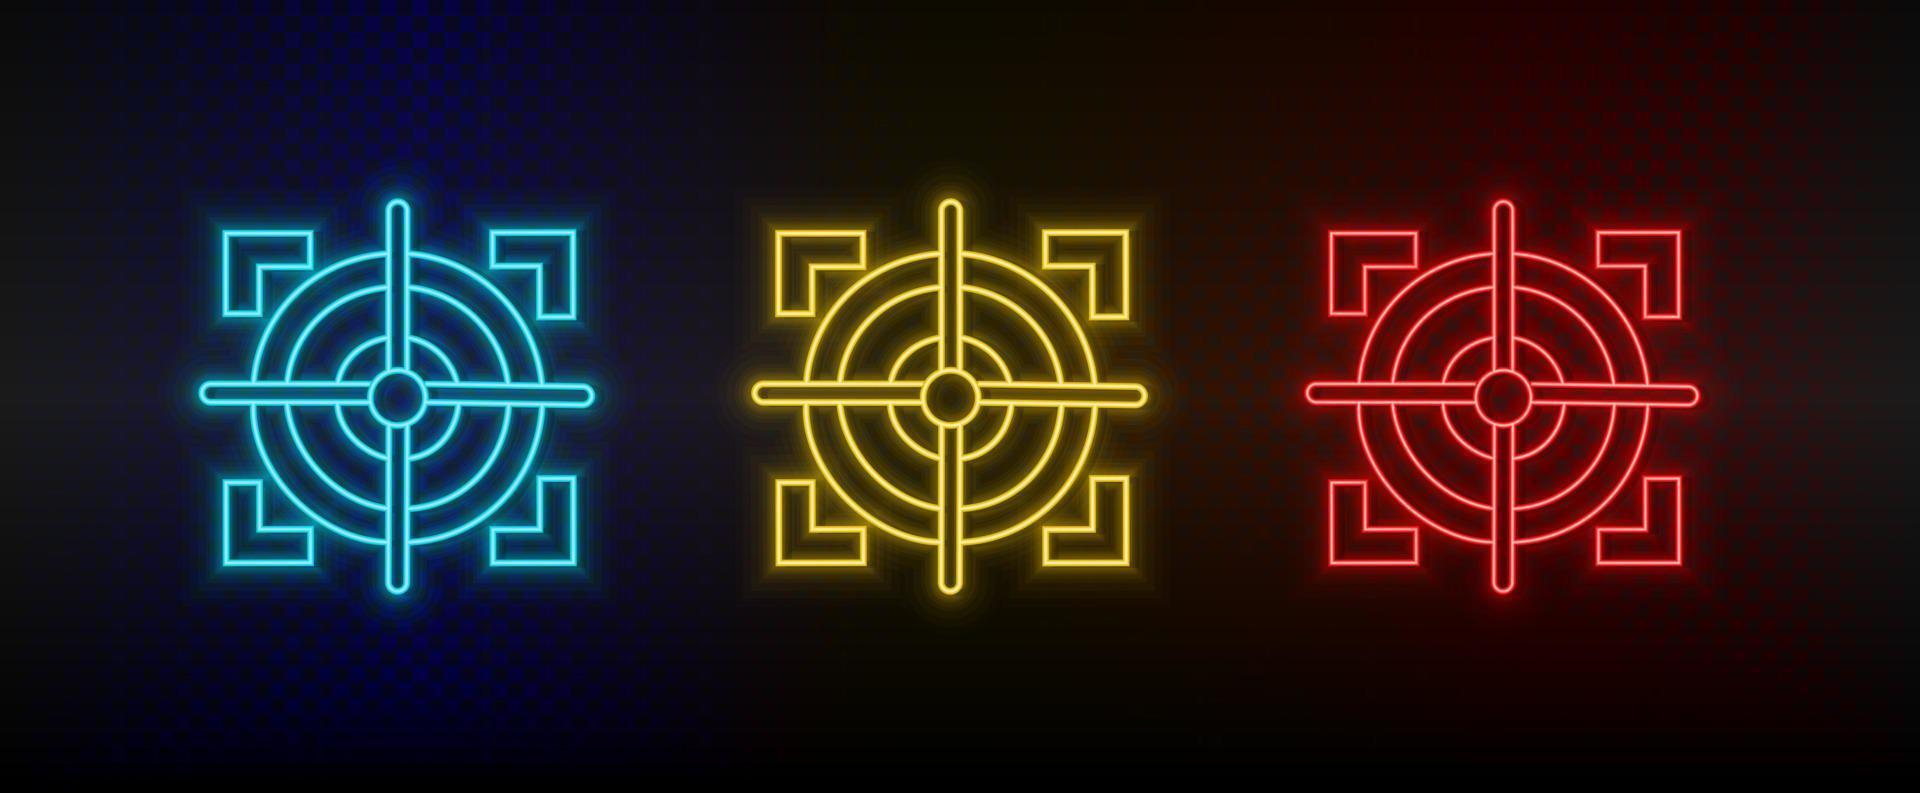 Neon-Symbole. Ziel Scharfschützenziel. Satz von roten, blauen, gelben Neonvektorsymbolen auf dunklem Hintergrund vektor